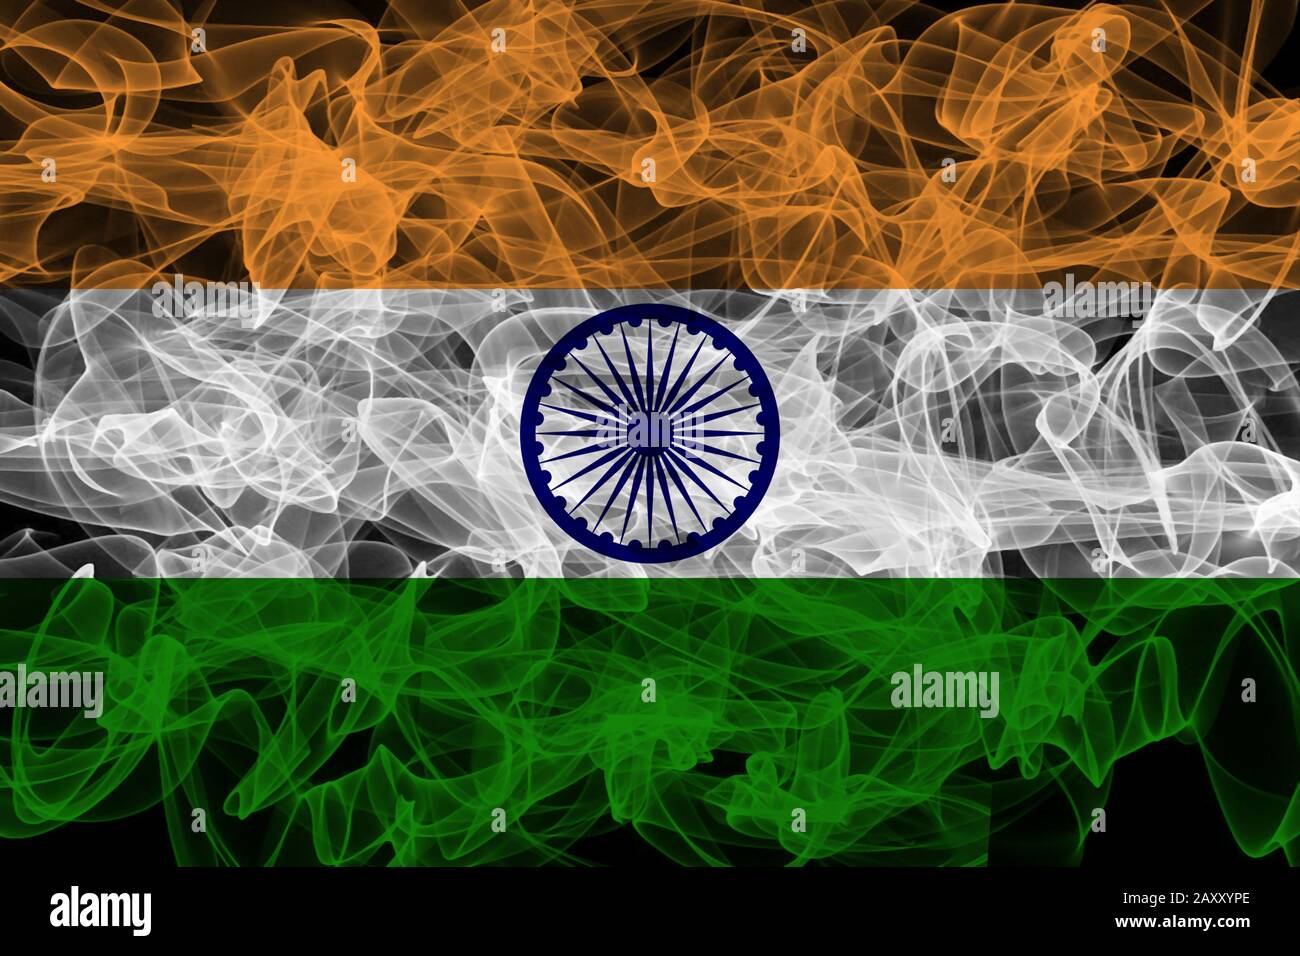 India Smoke Flag on Black Background, India flag Stock Photo - Alamy